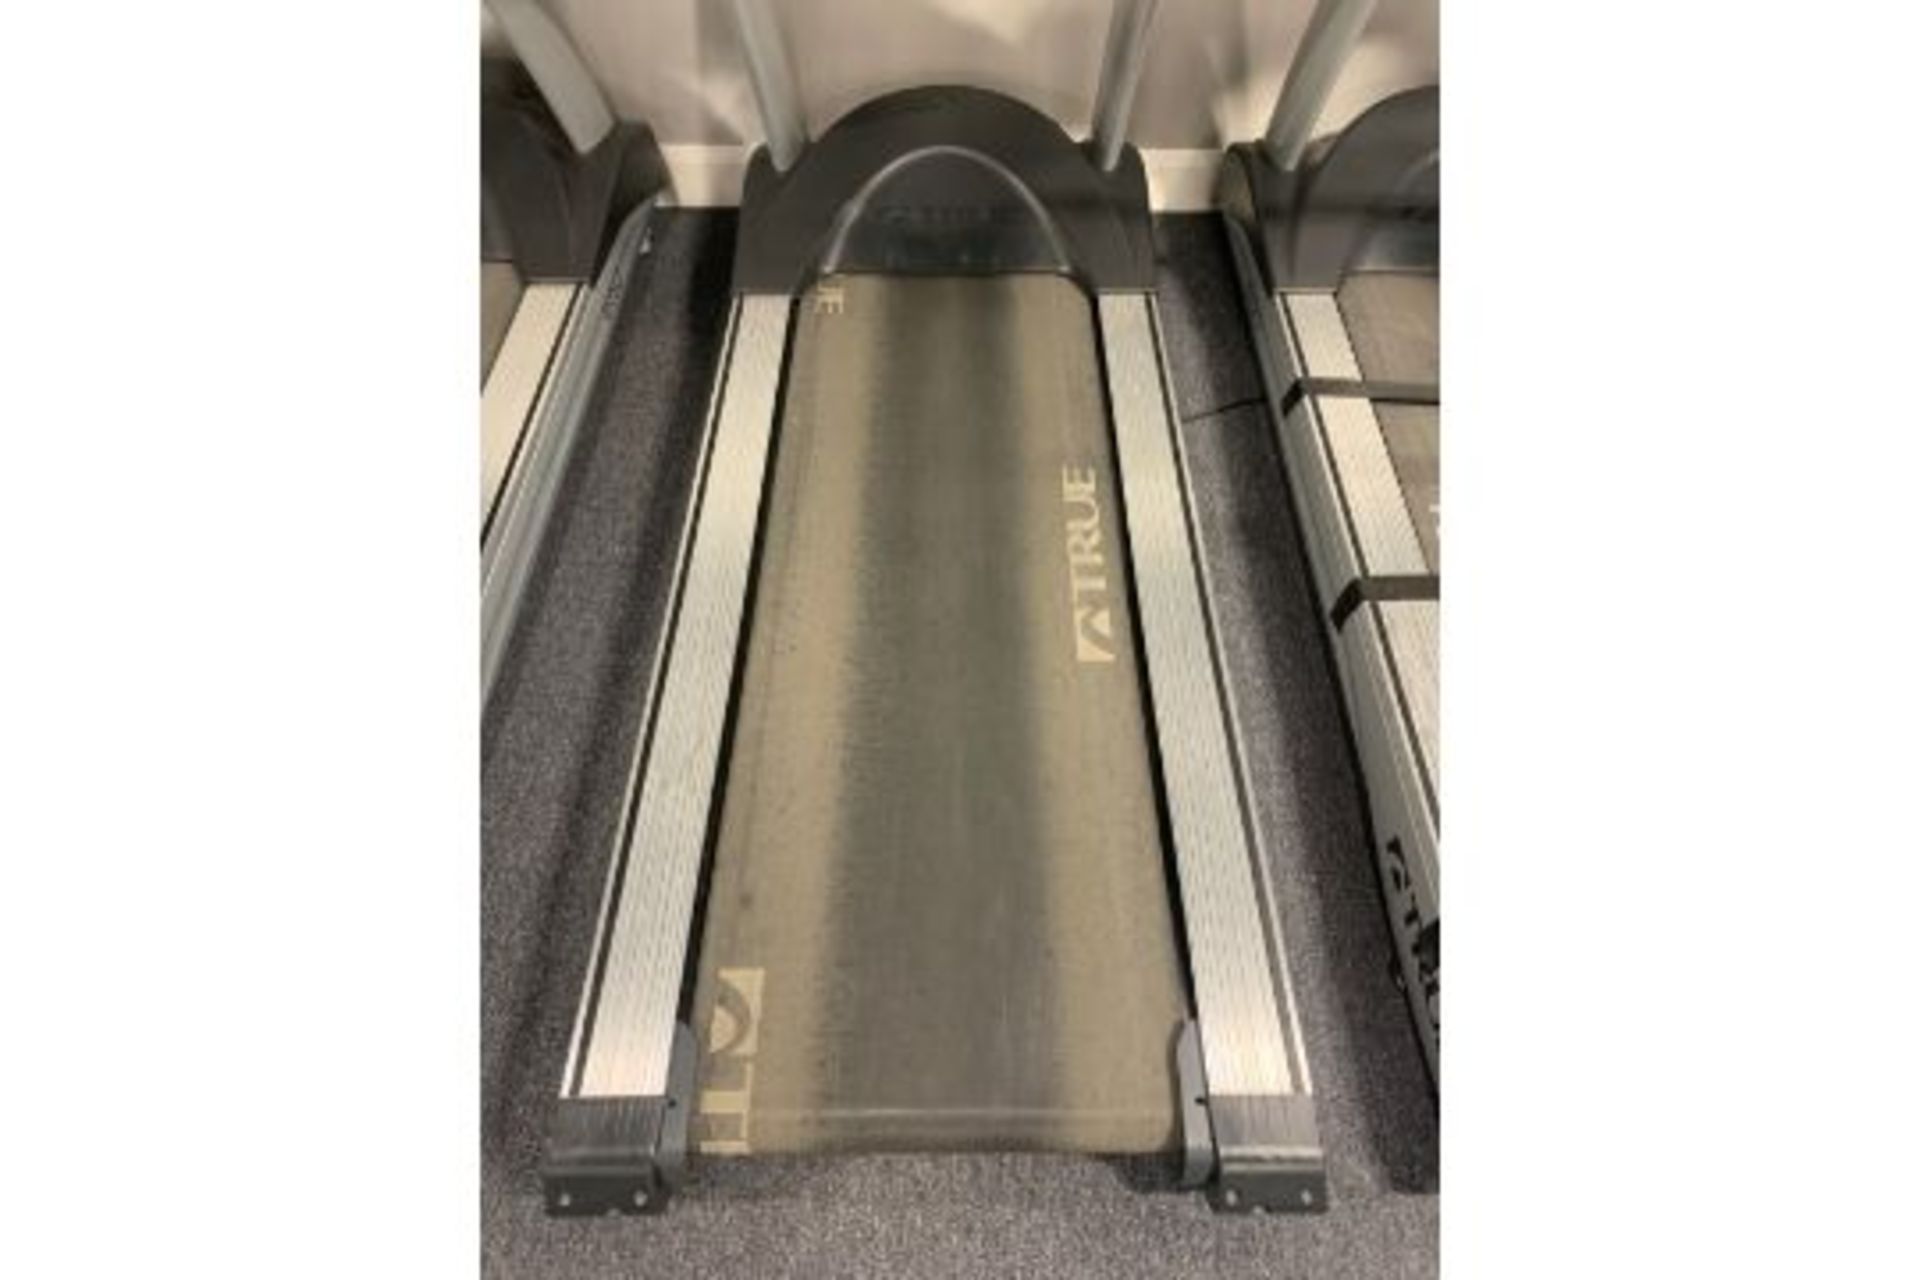 True Fitness 650 Treadmill - Image 3 of 3